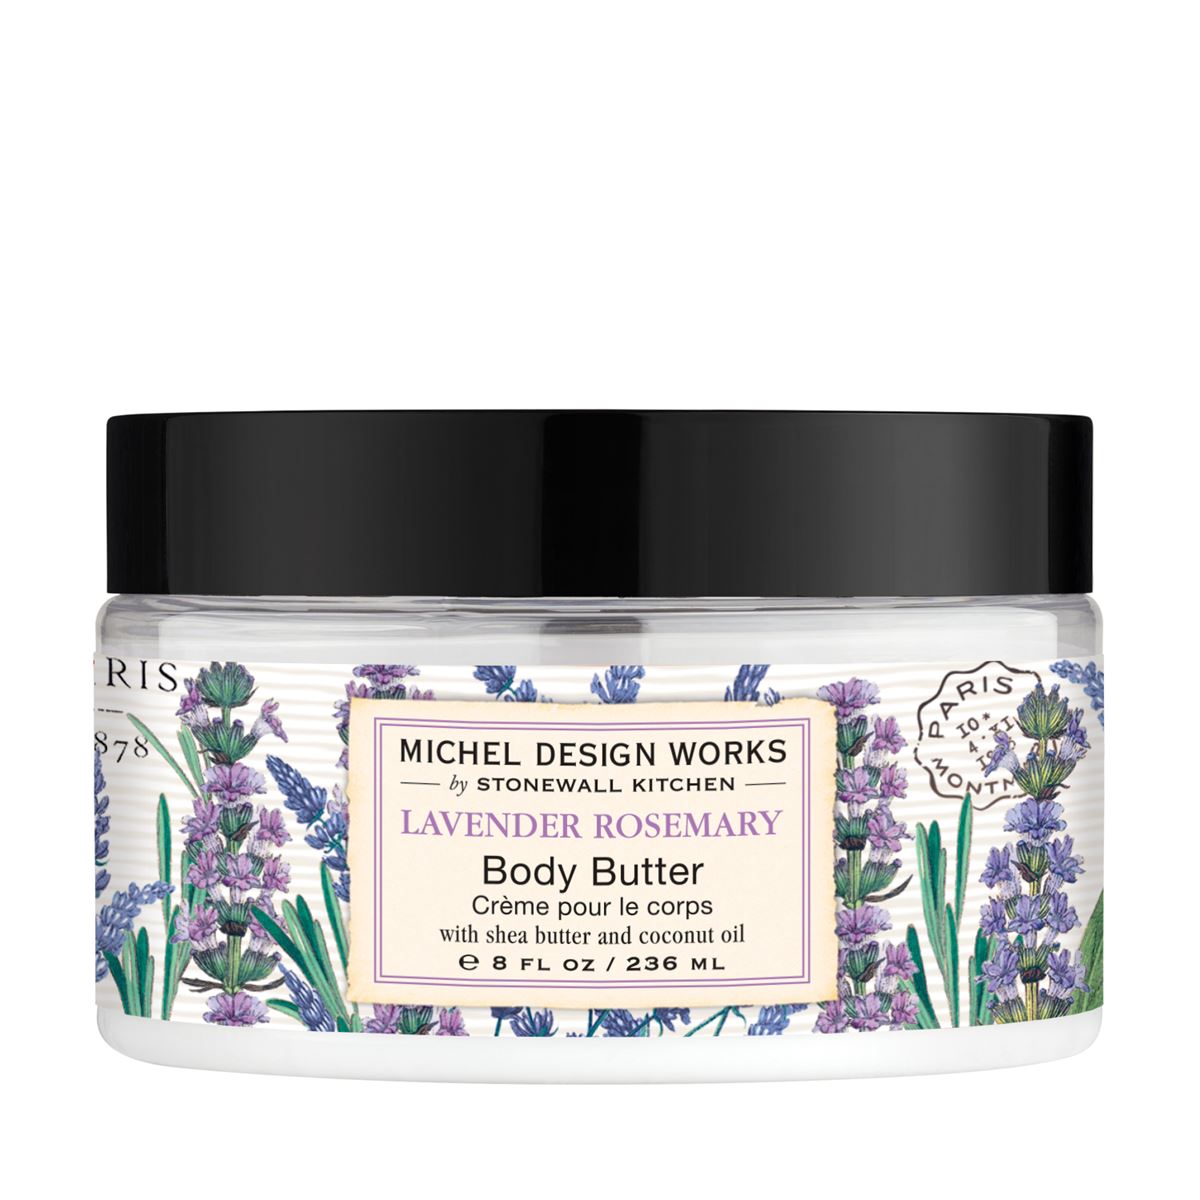 Michel Design Works - Lavender Rosemary Body Butter